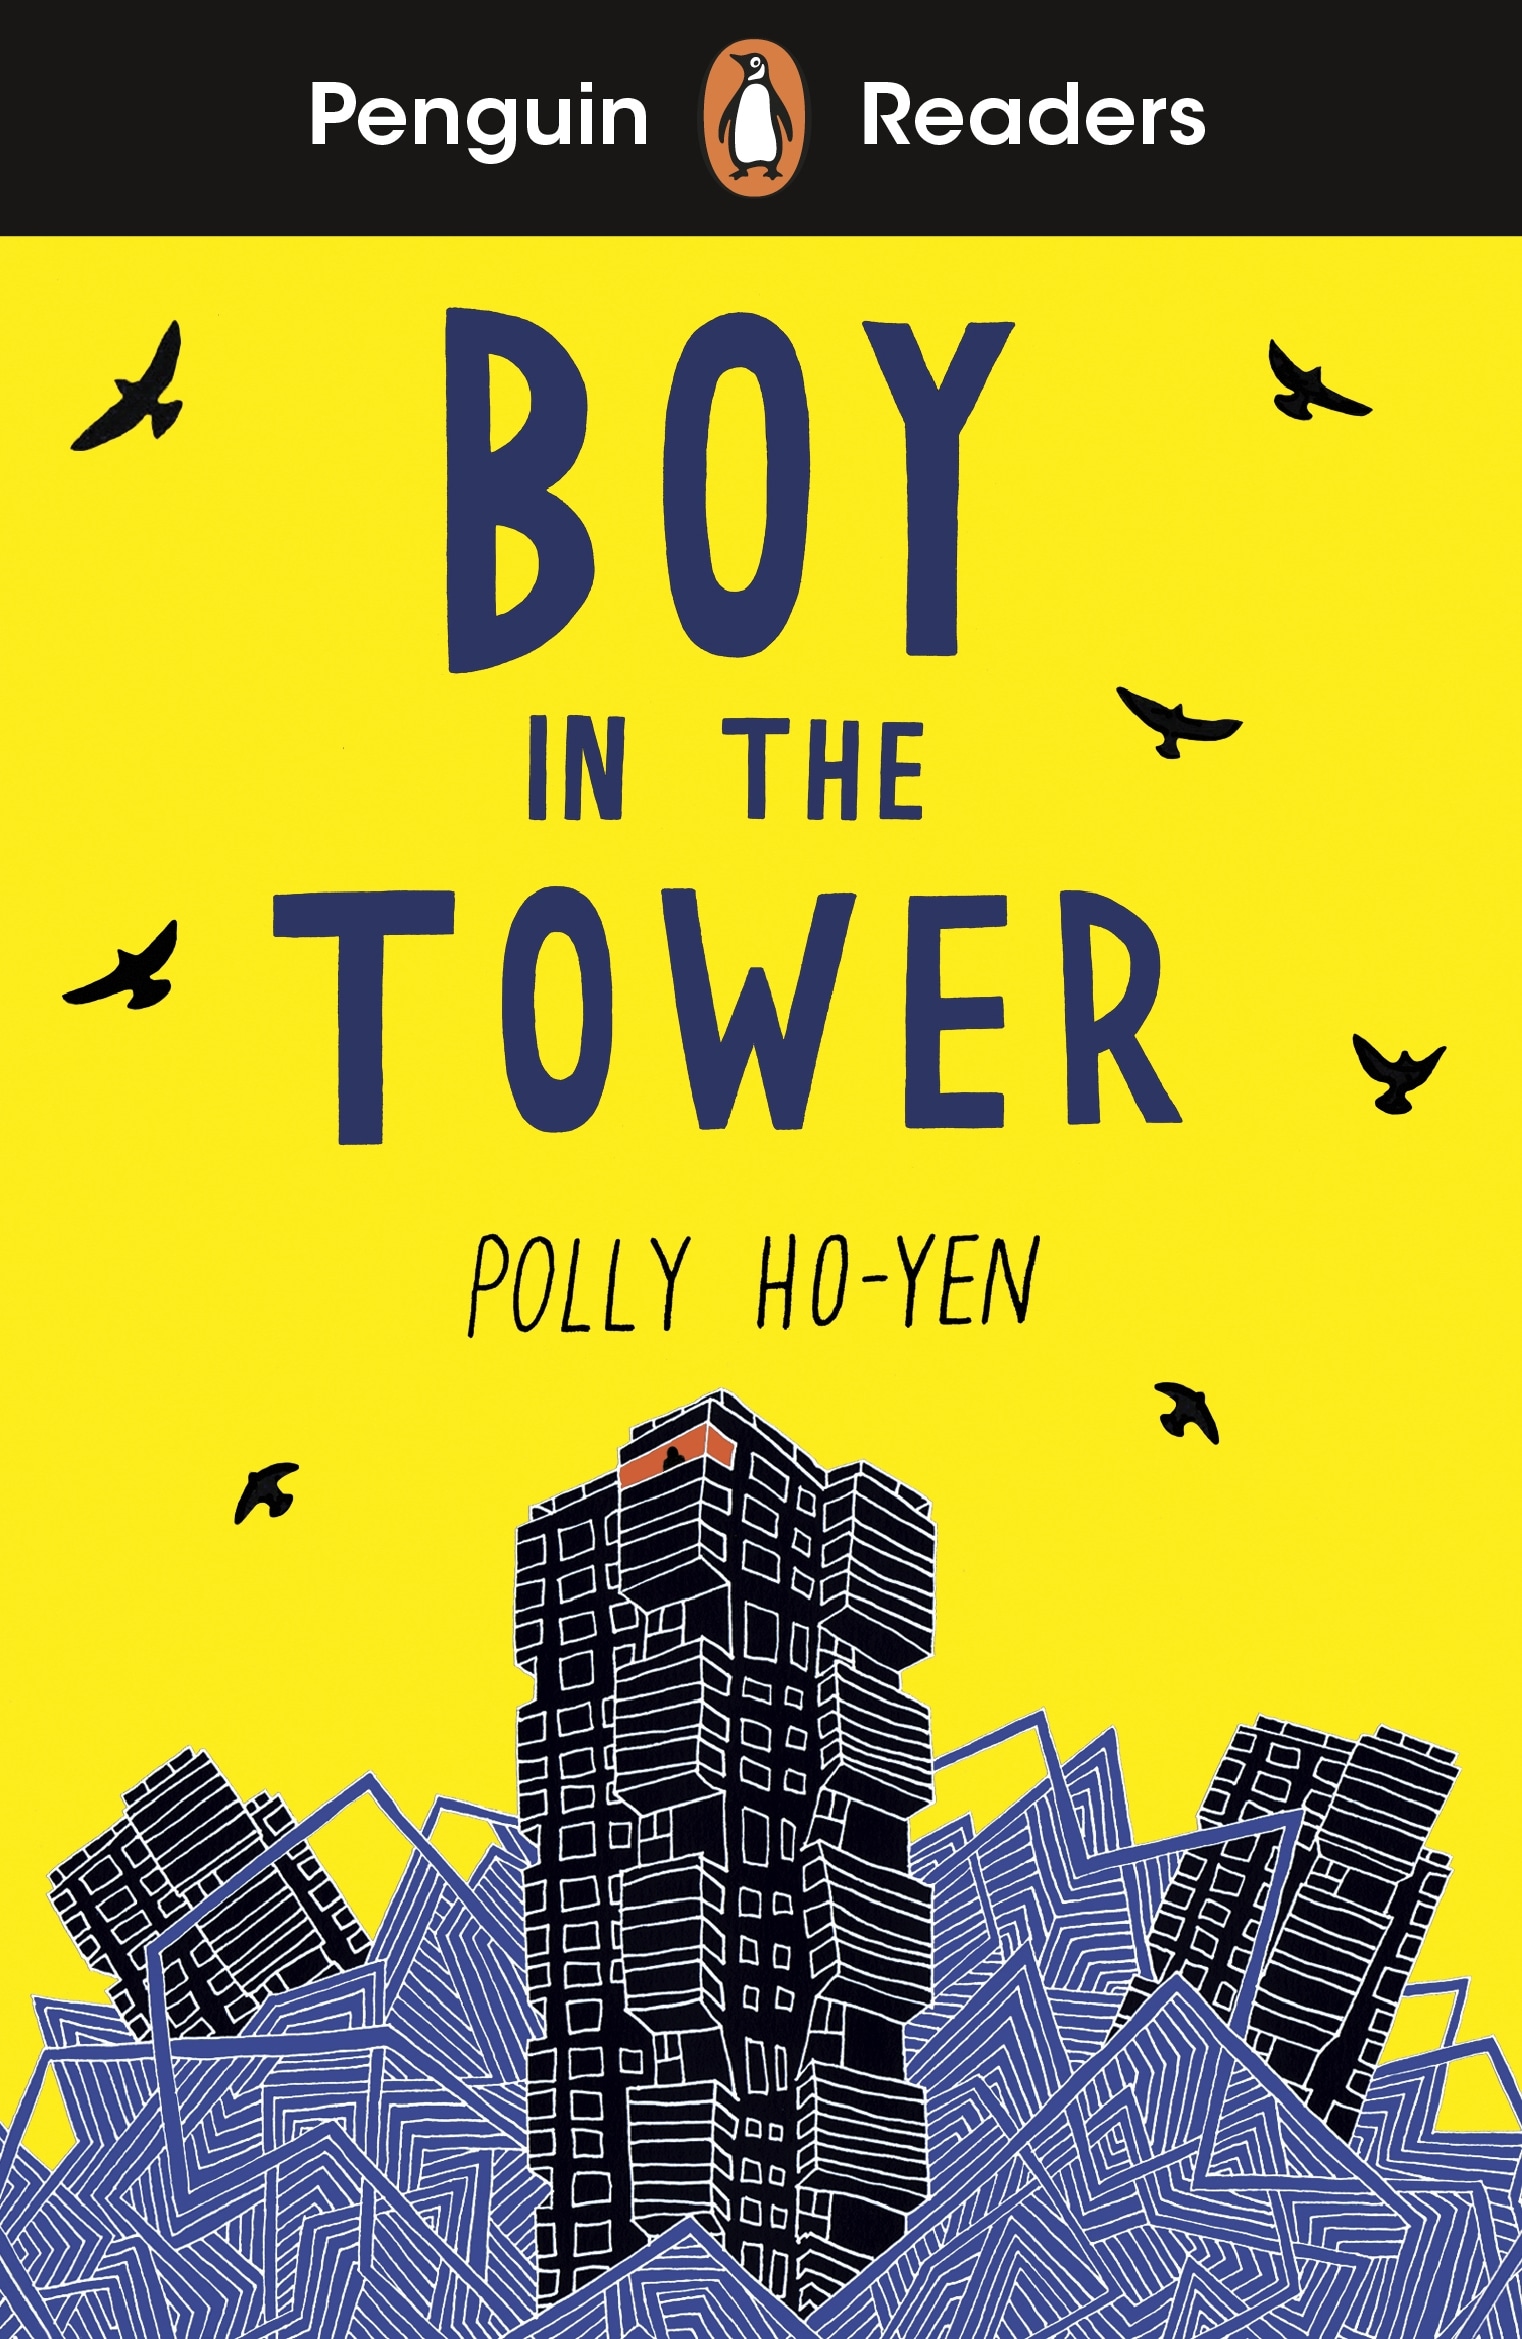 Book “Penguin Readers Level 2: Boy In The Tower (ELT Graded Reader)” by Polly Ho-Yen — September 30, 2021